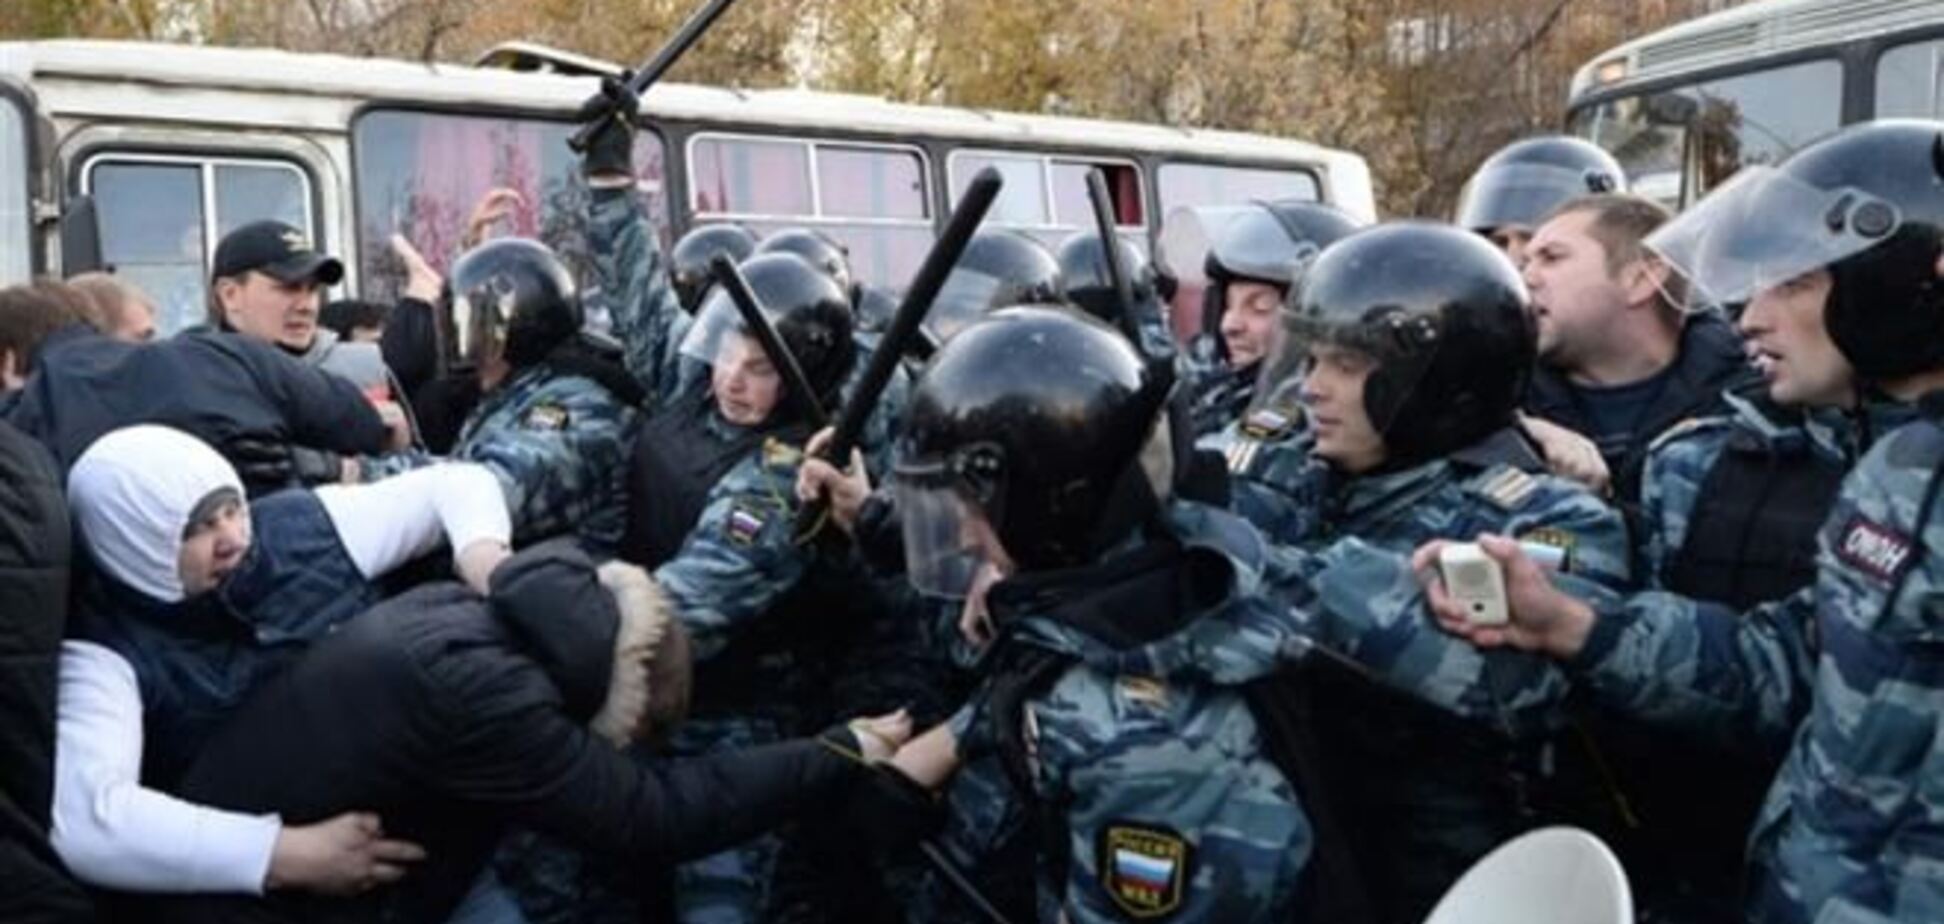 Проходящему по делу о беспорядках в Бирюлево украинцу предъявлено обвинение